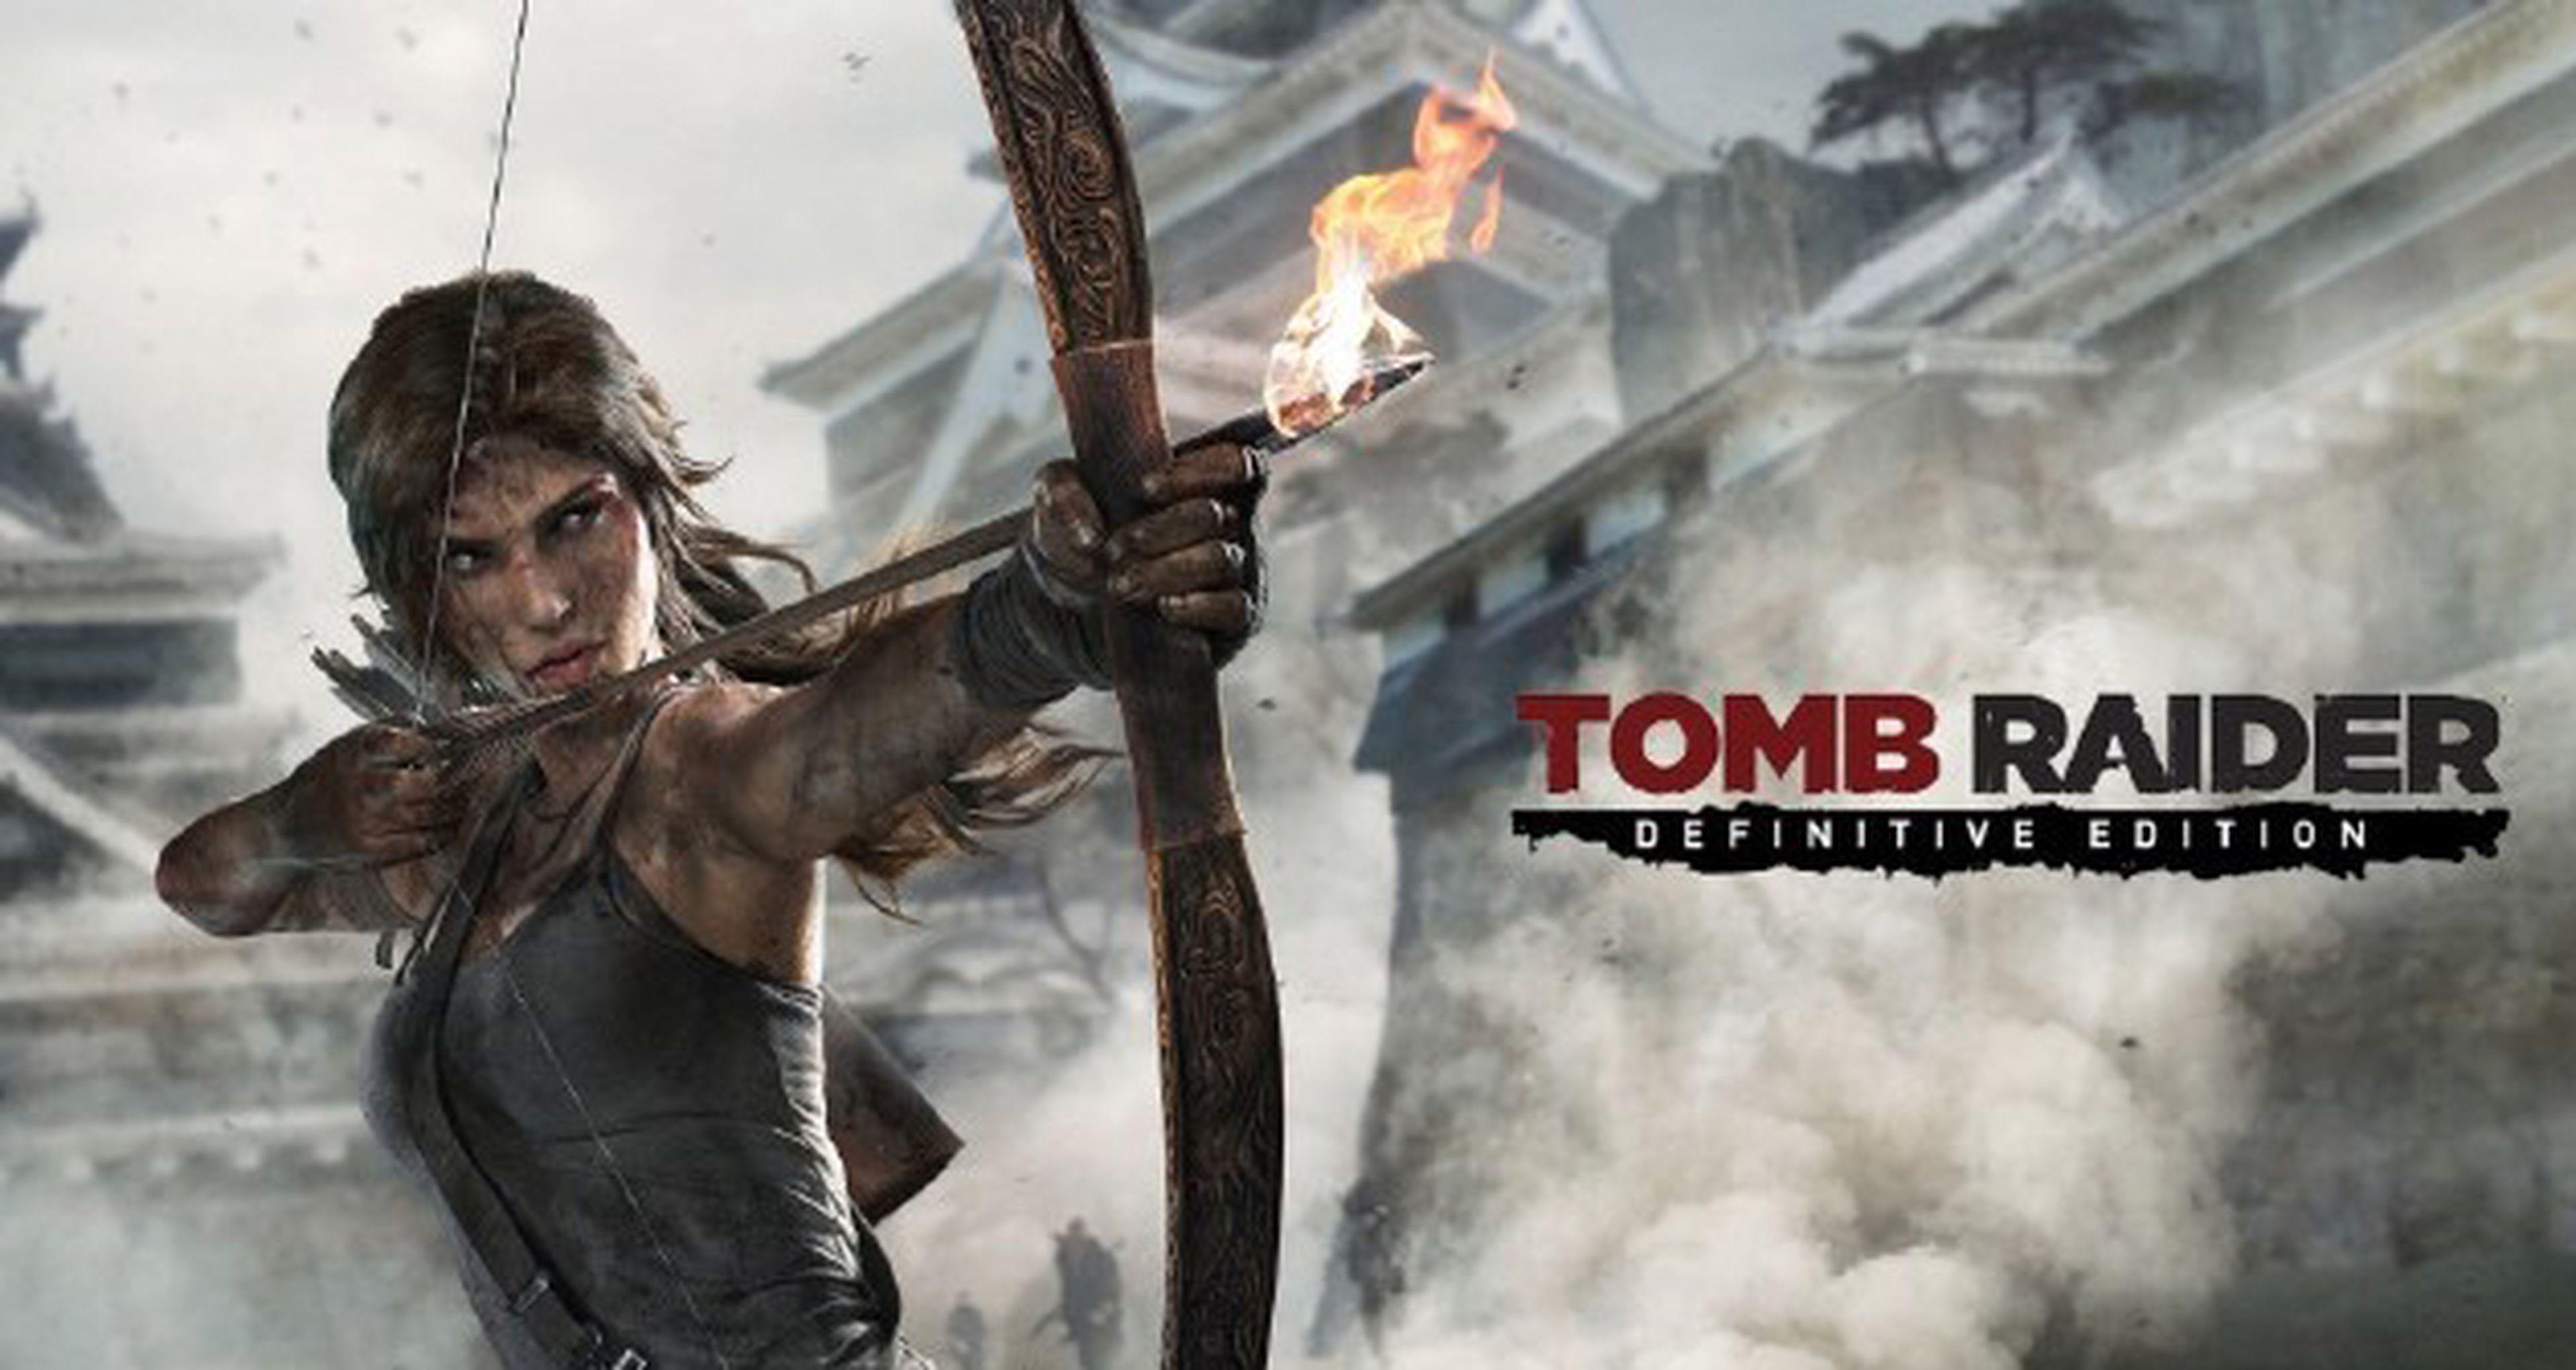 Tomb Raider encabeza en las Ofertas con Gold de la semana en Xbox Live